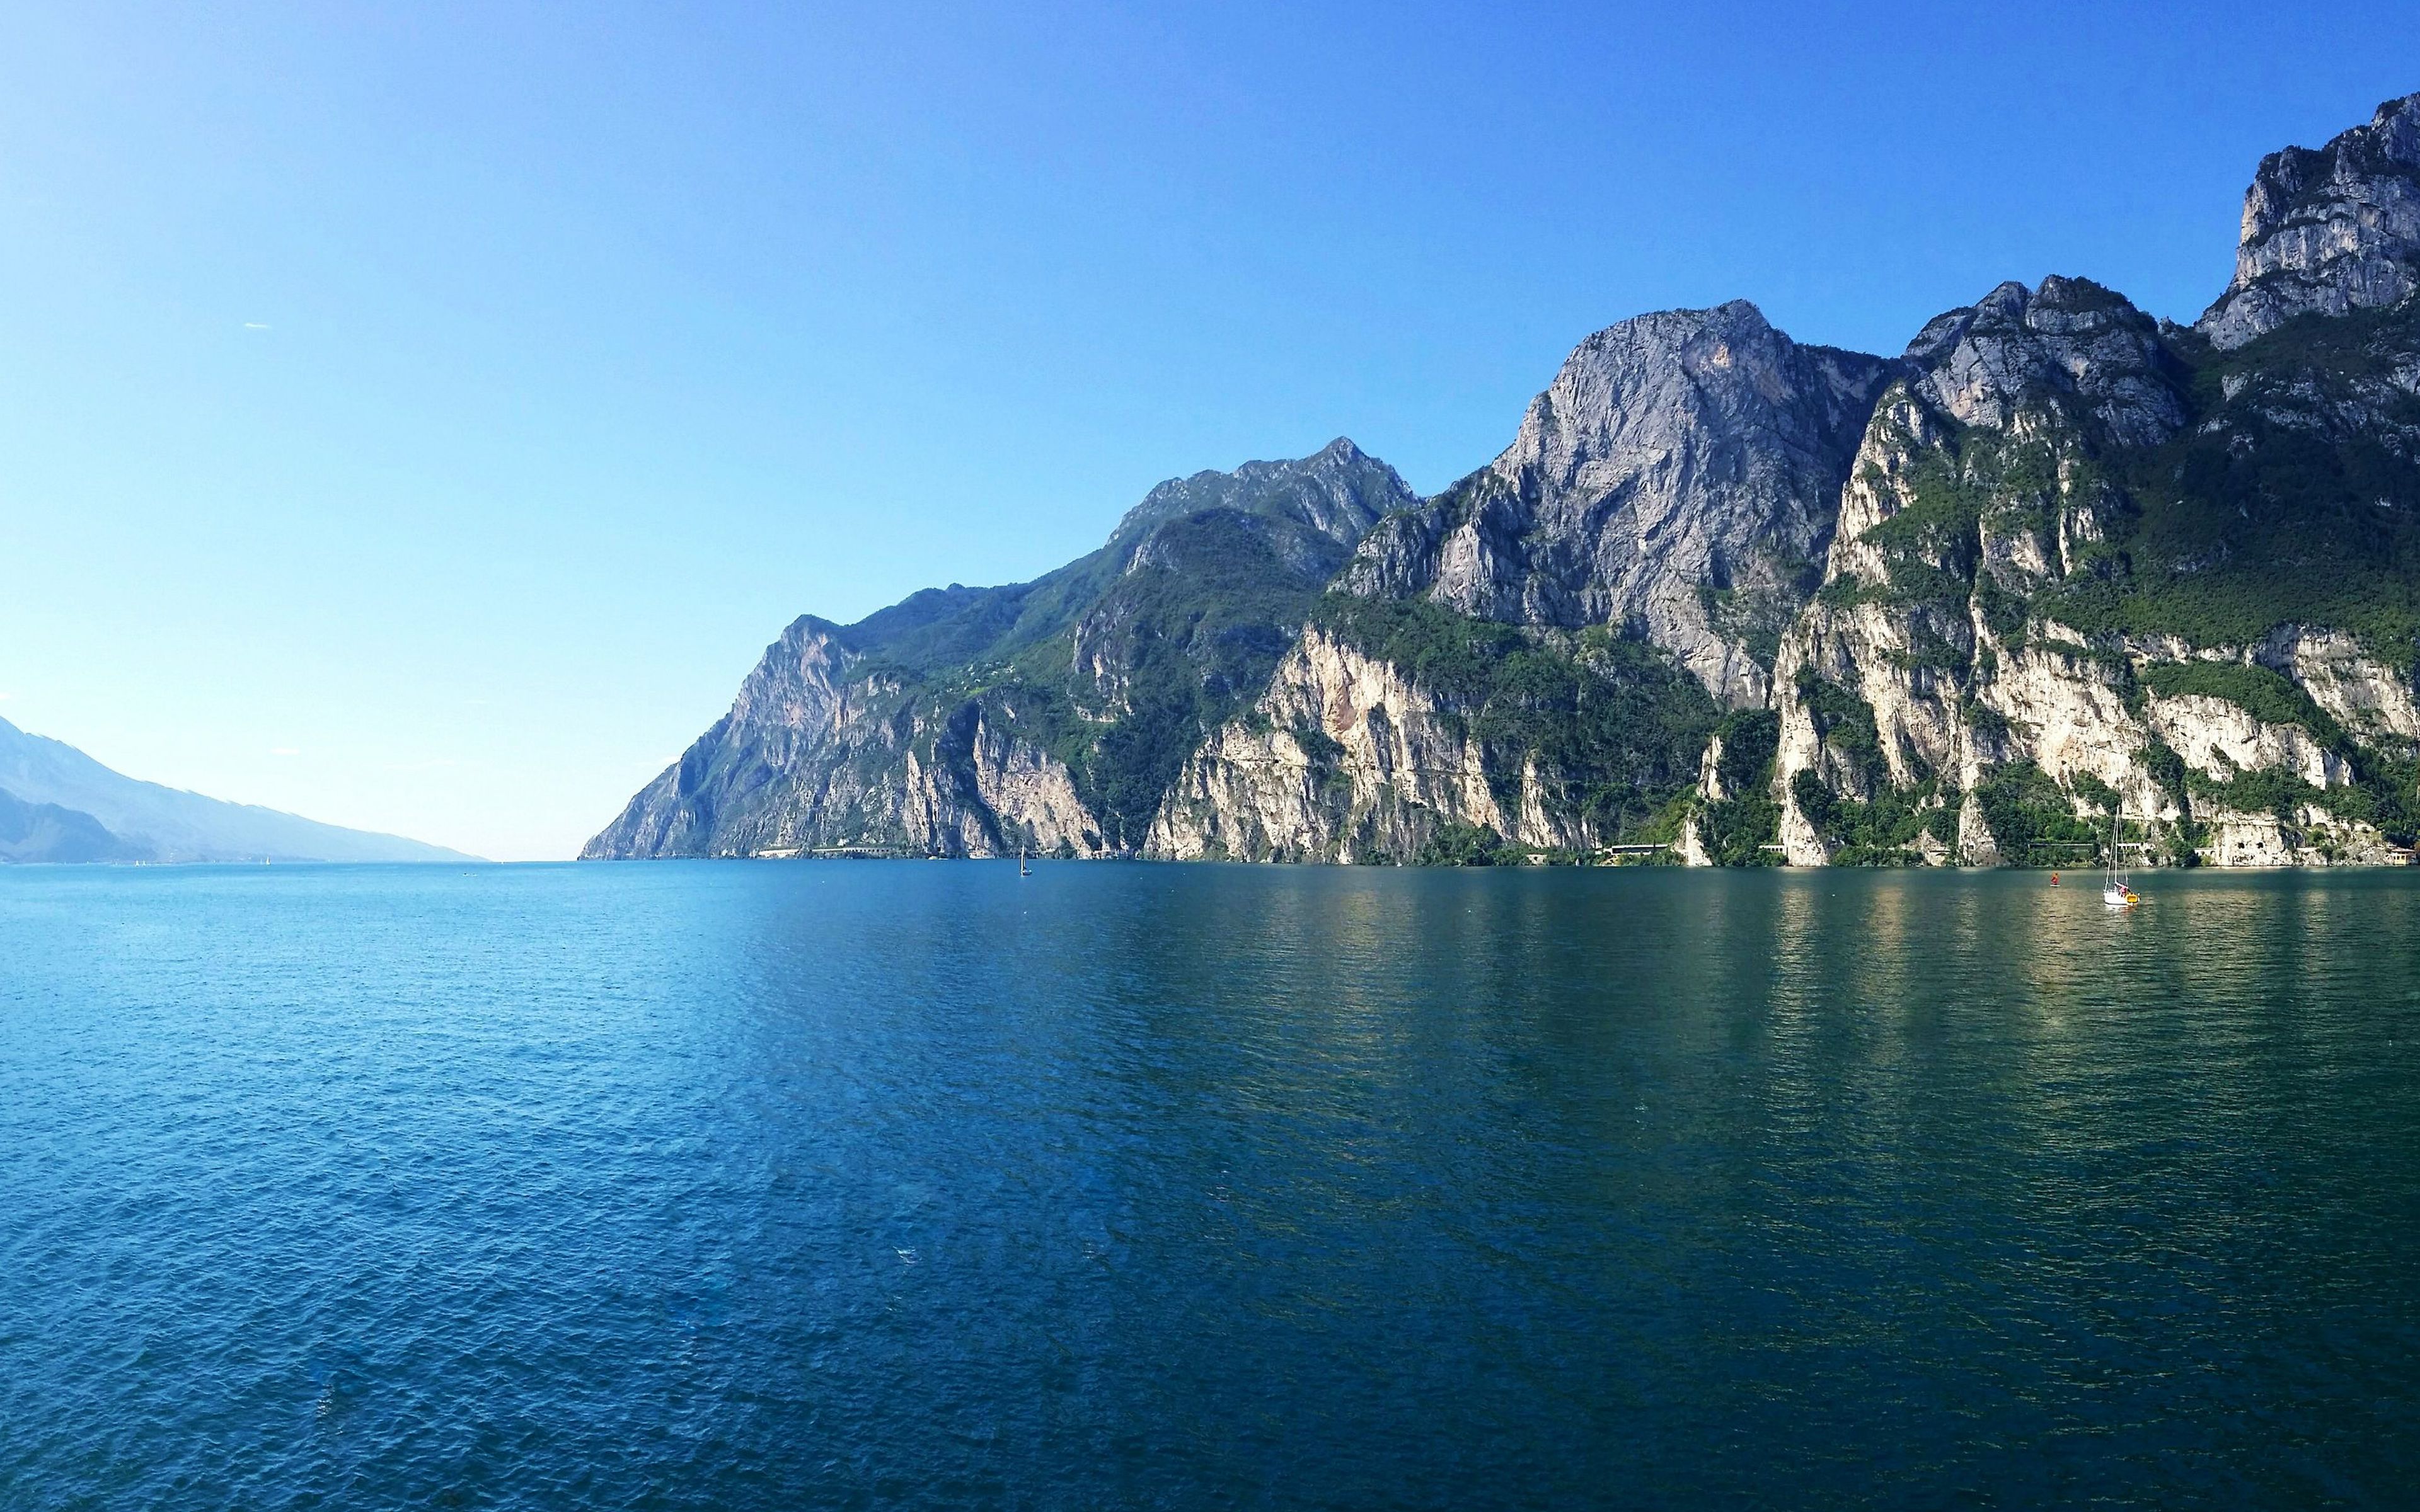 Download wallpaper Lake Garda, 4k, mountain lake, mountains, Alps